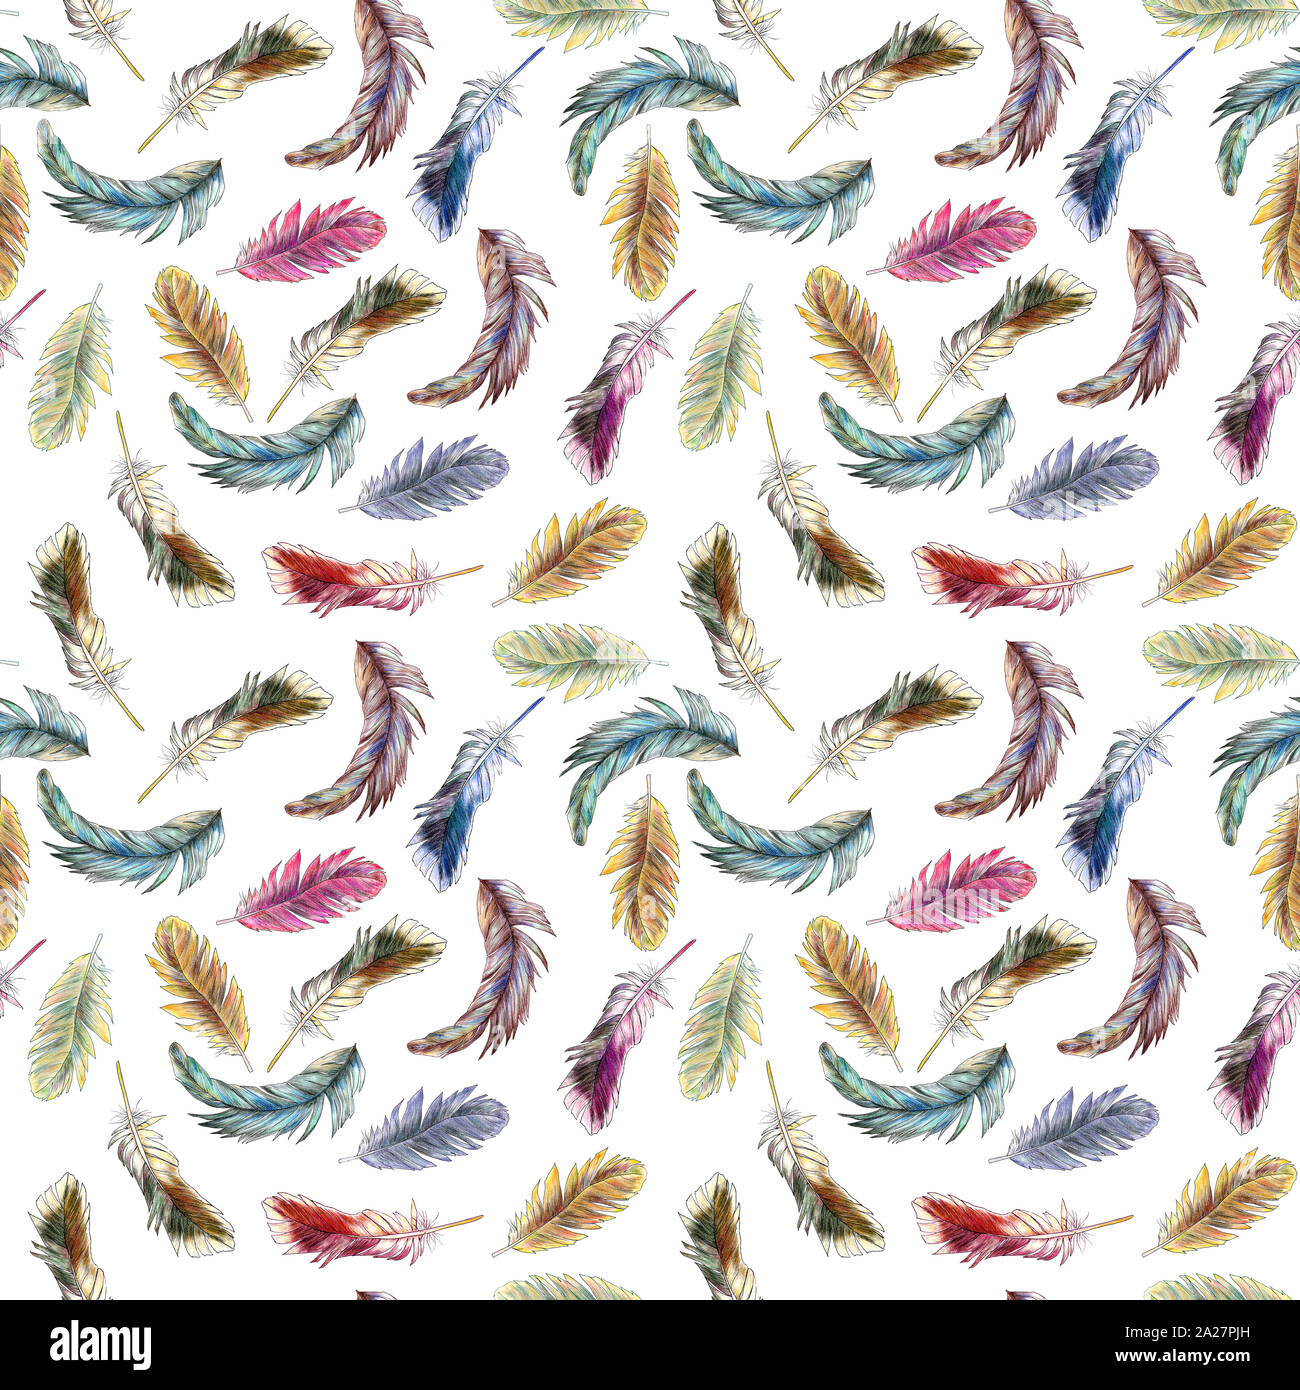 Nahtloses Muster farbiger Federn, die in Wasserfarben lackiert sind. Bild für Tapete, Textil, Geschenkpapier, Sammelpapier, Geschenkbeutel Stockfoto